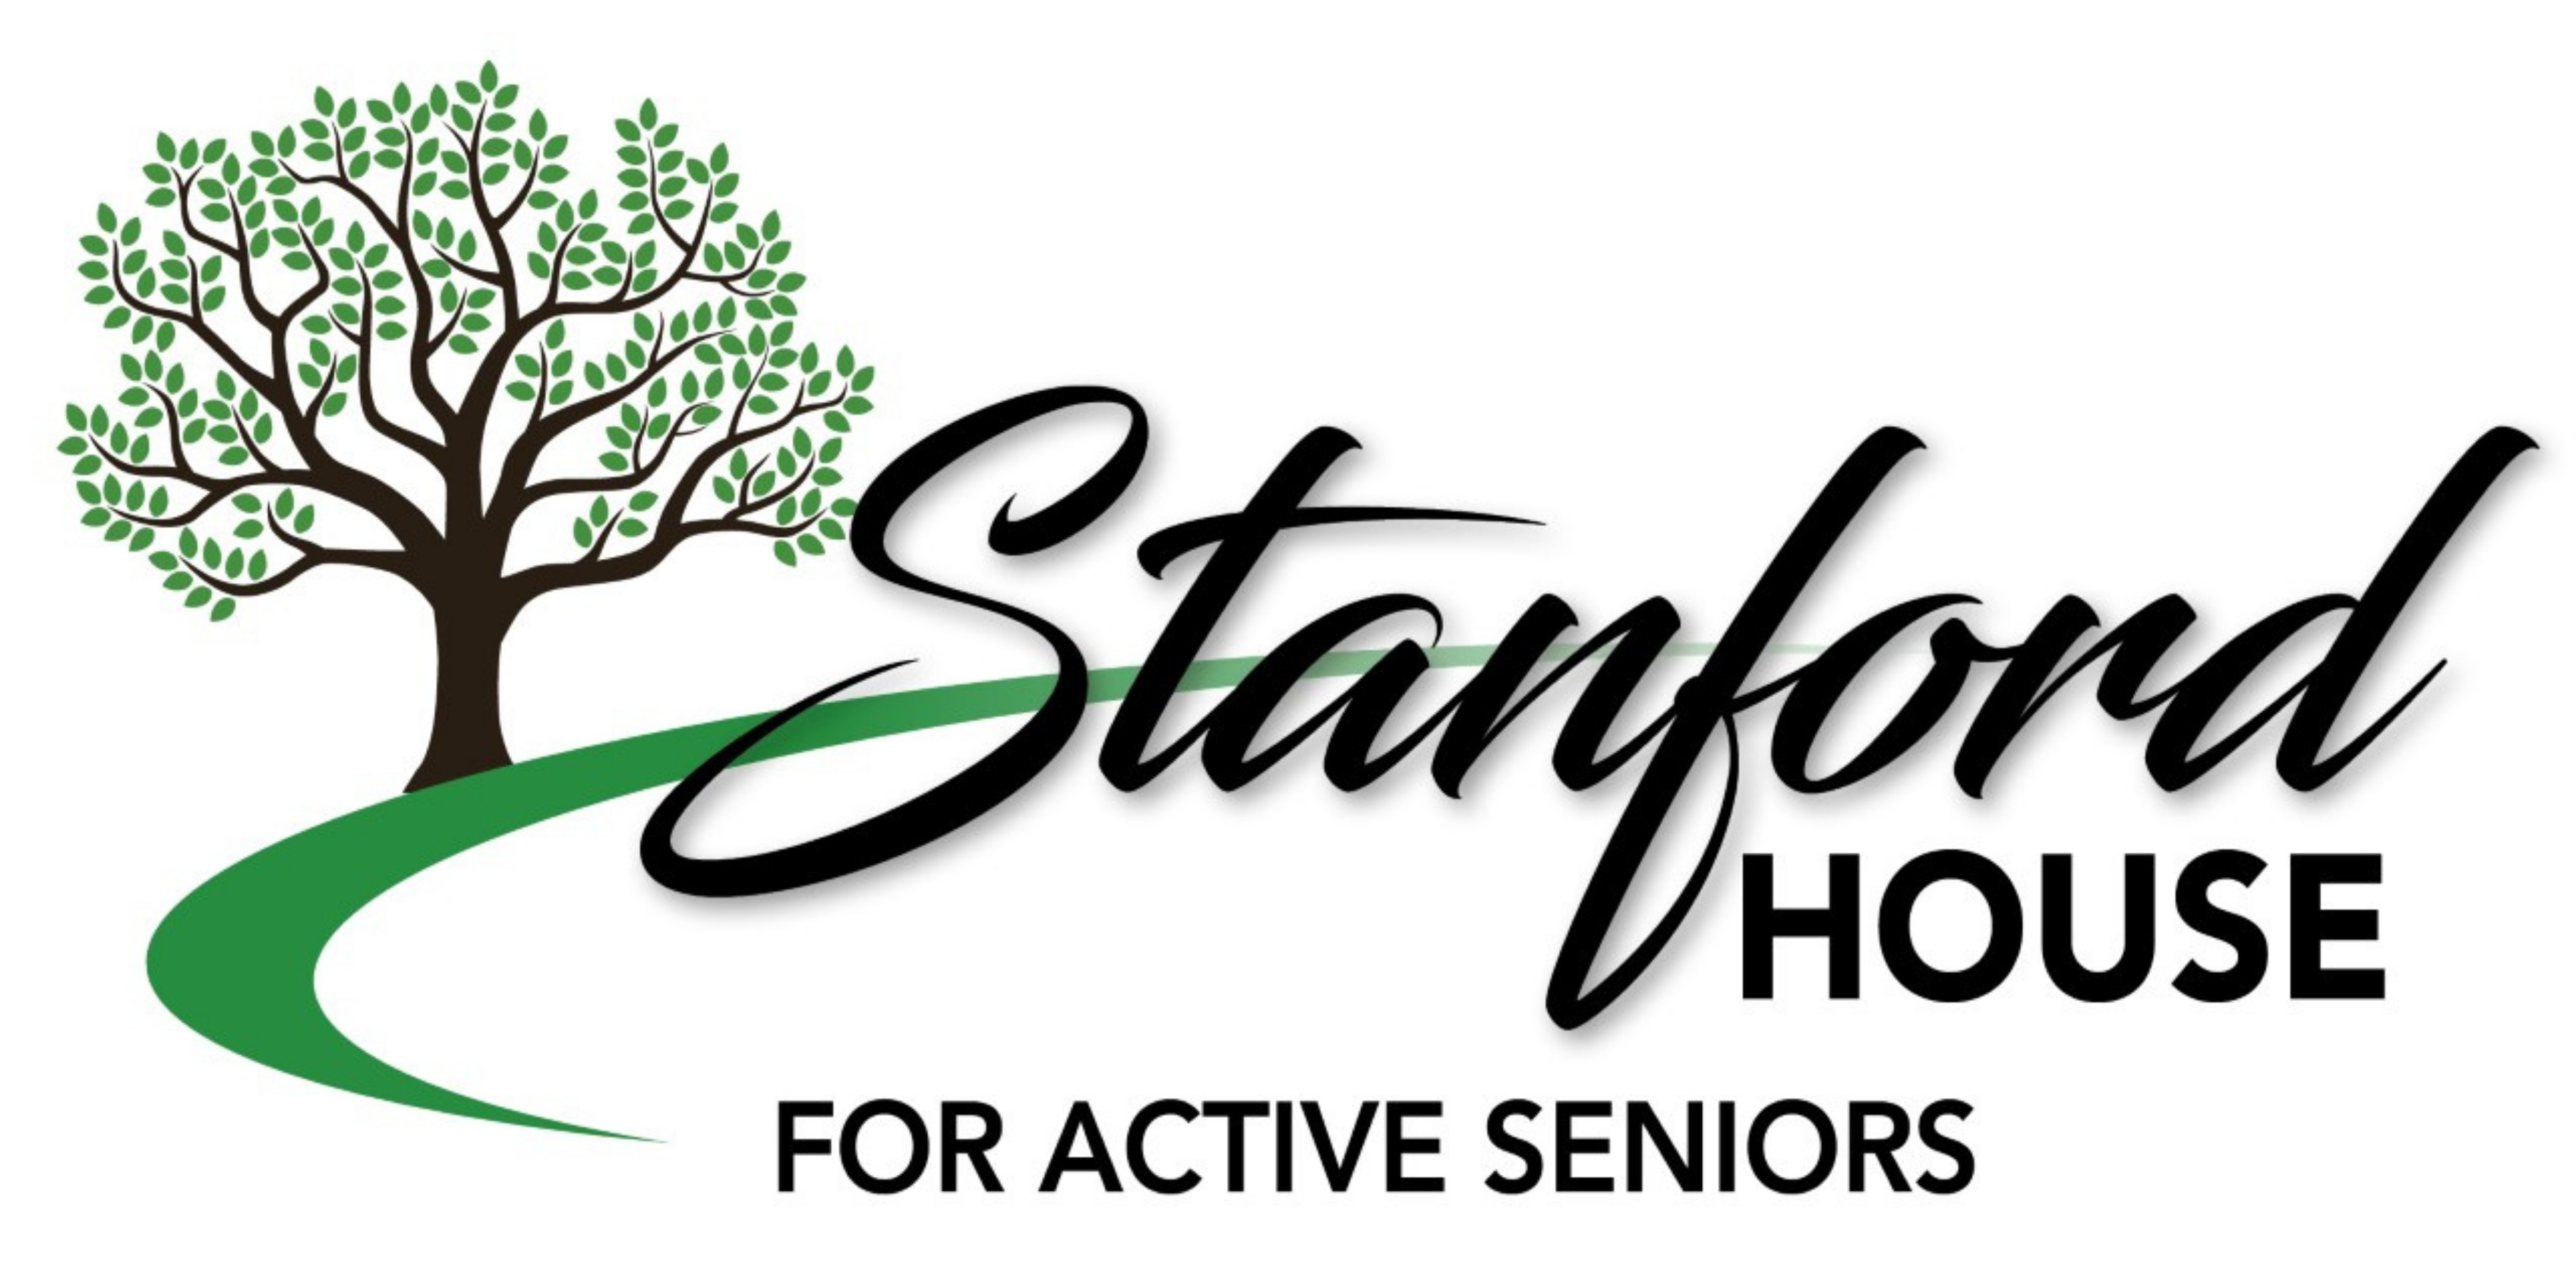 Stanford House Senior Activity Center